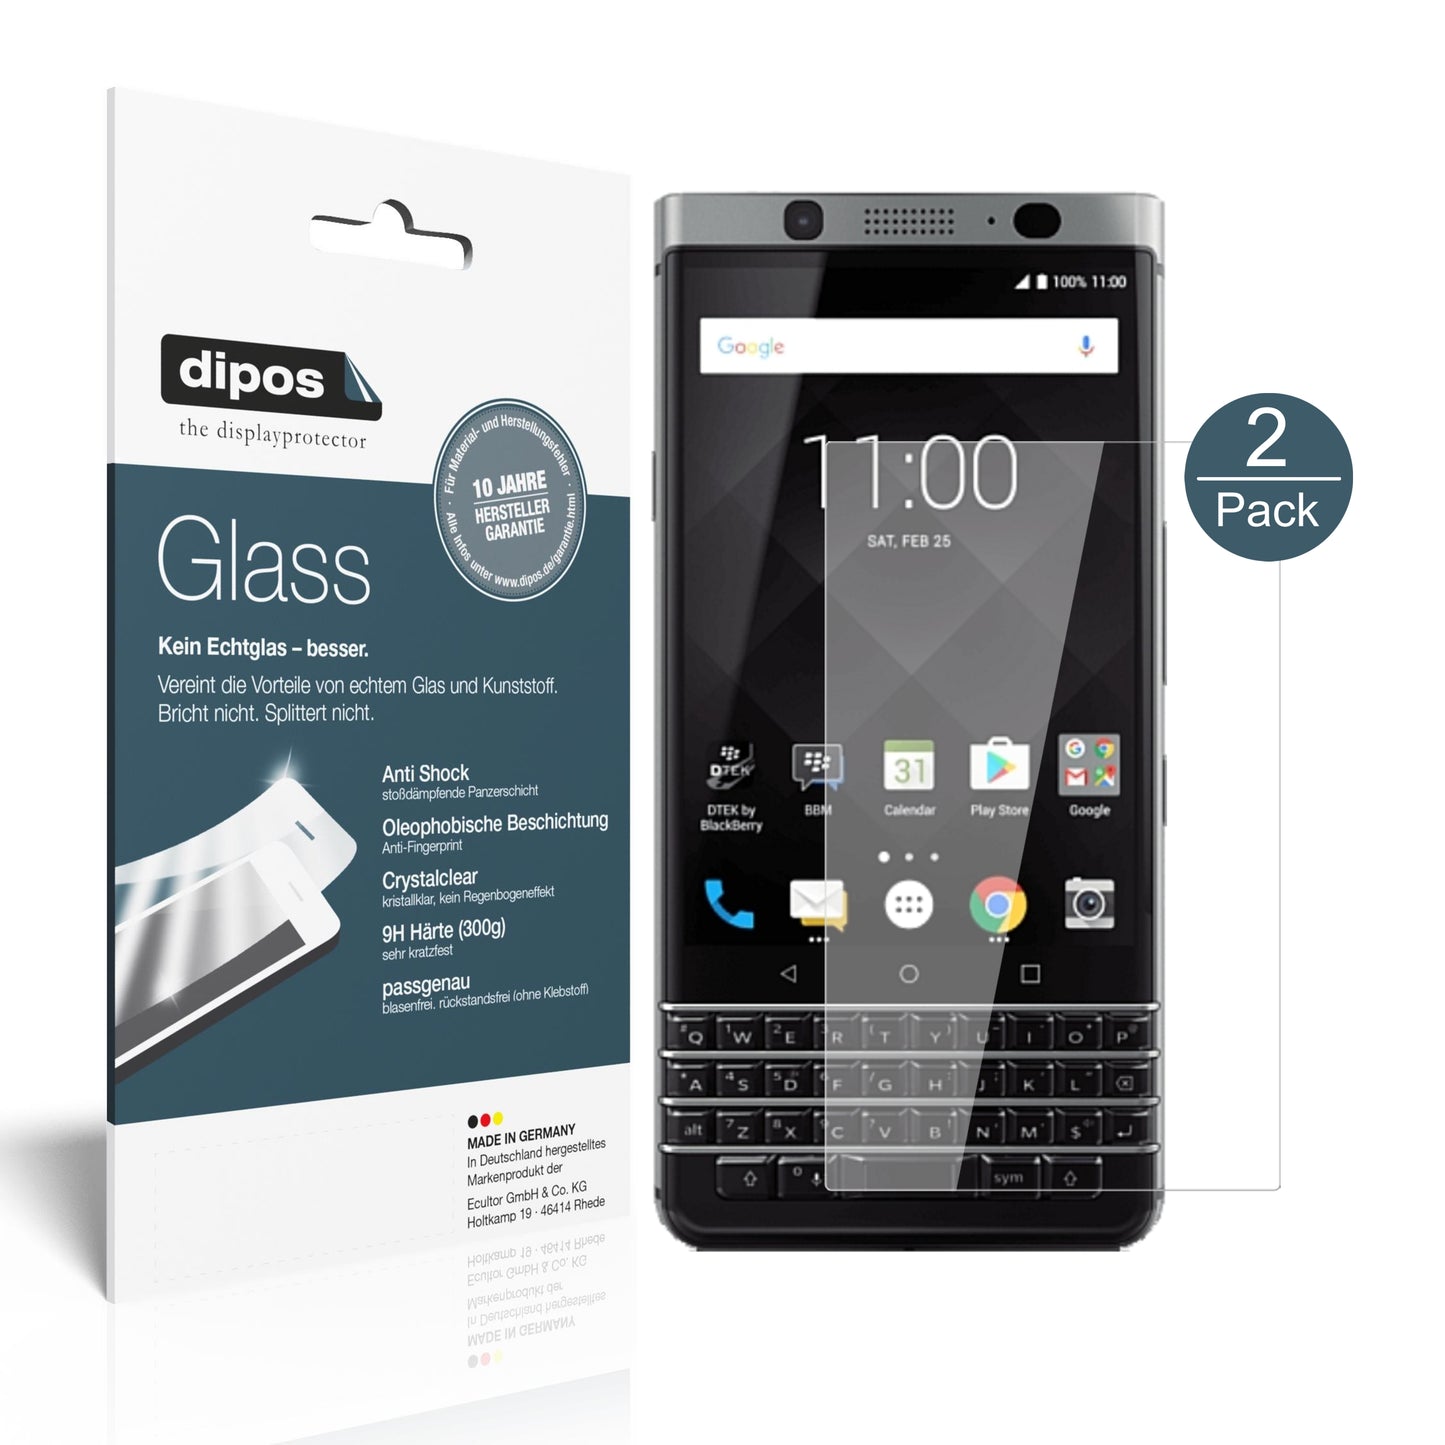 Perfekte Passform und ultimative Qualität: Unser 9H Panzerglas bietet Schutz für BlackBerry-KeyOne